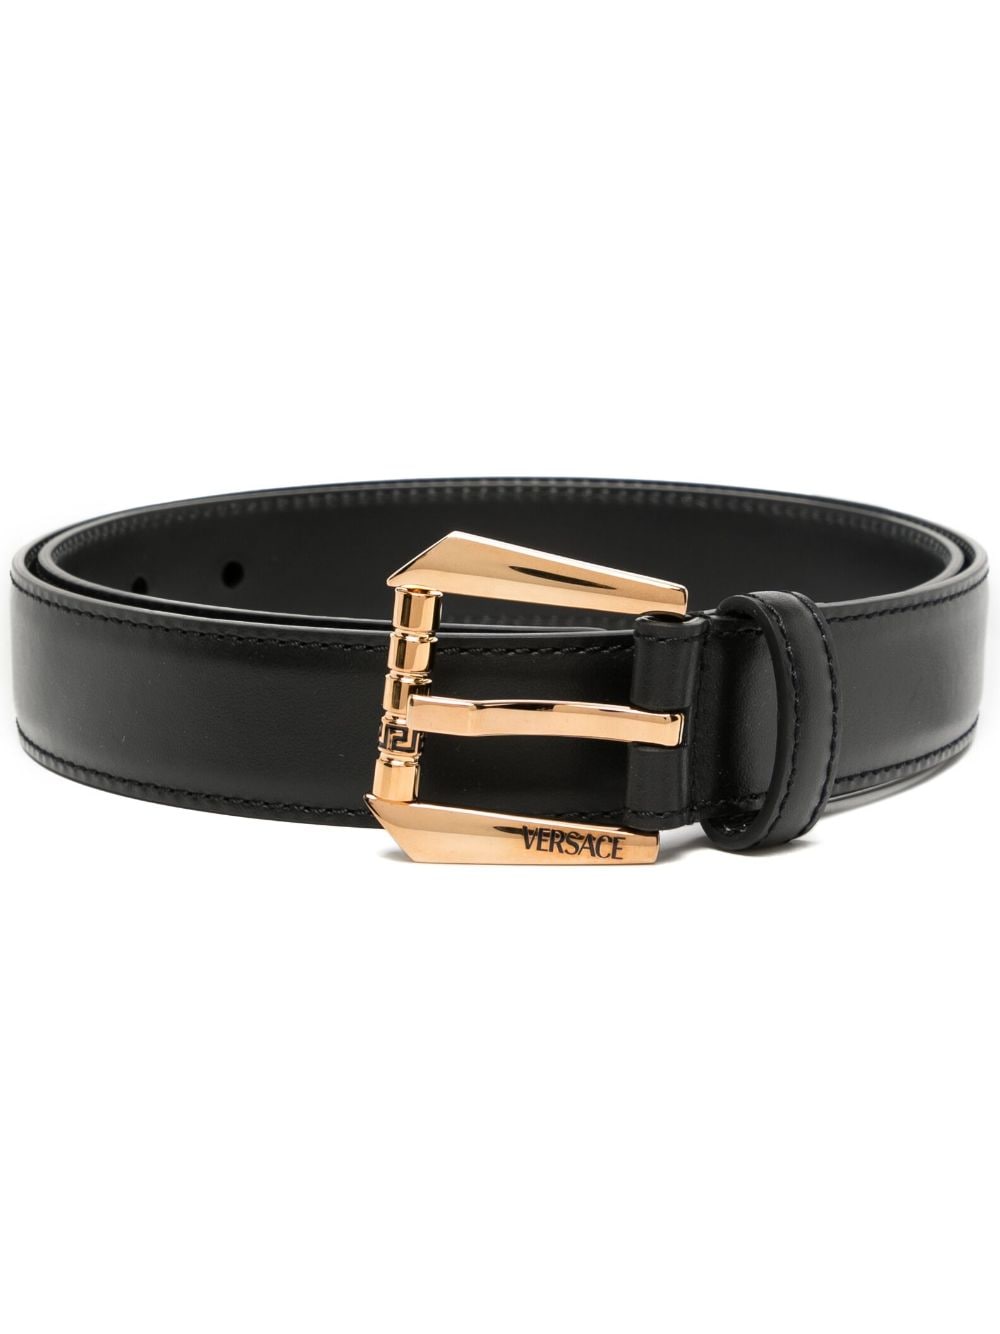 Versace logo-engraved leather belt - Black